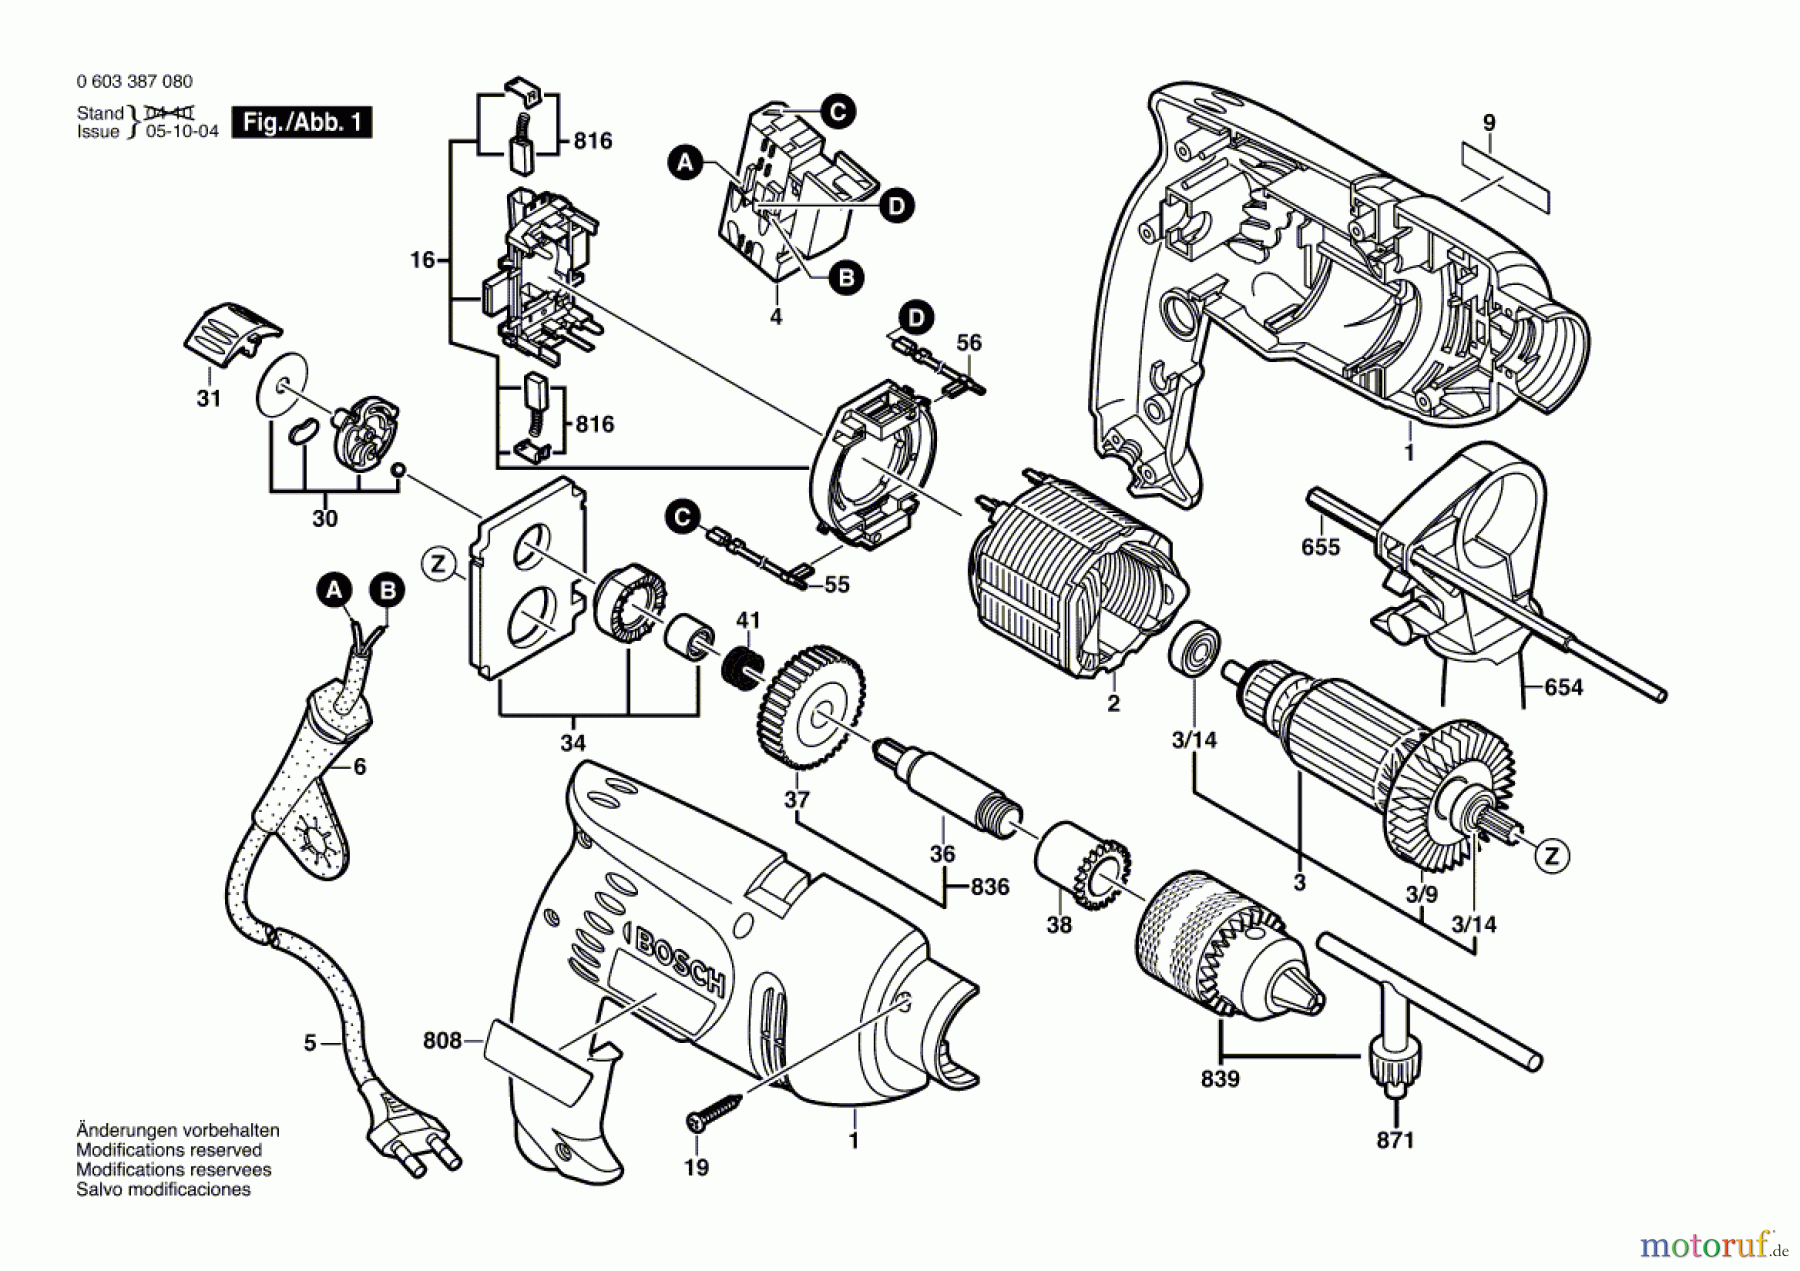  Bosch Werkzeug Schlagbohrmaschine PSB 500 Seite 1